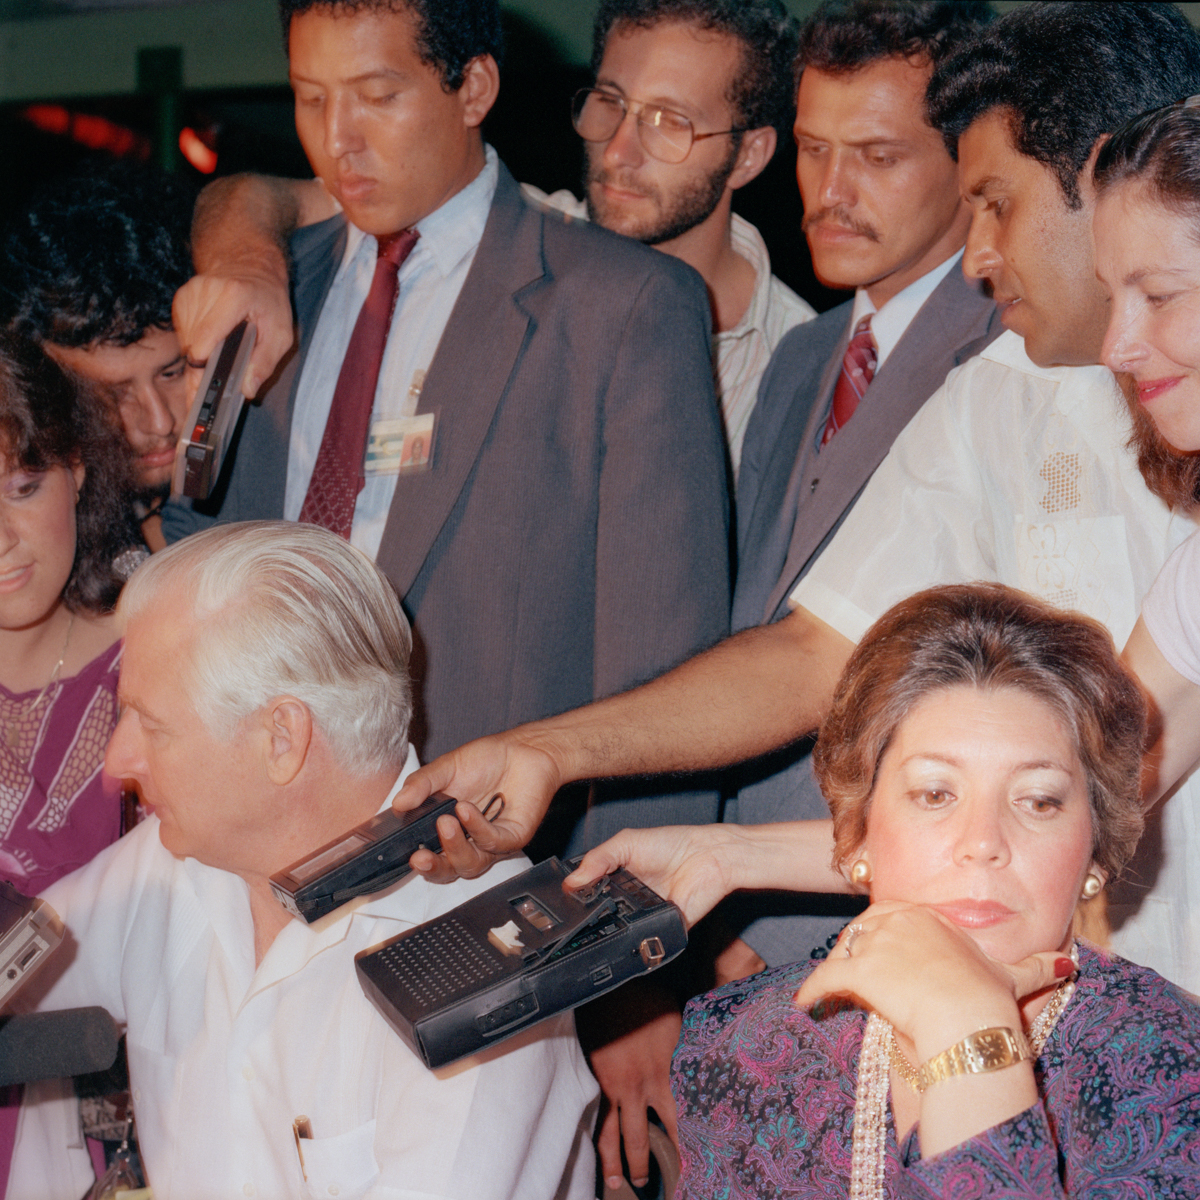 Press Conference, Esuipulas, Guatemala 1987